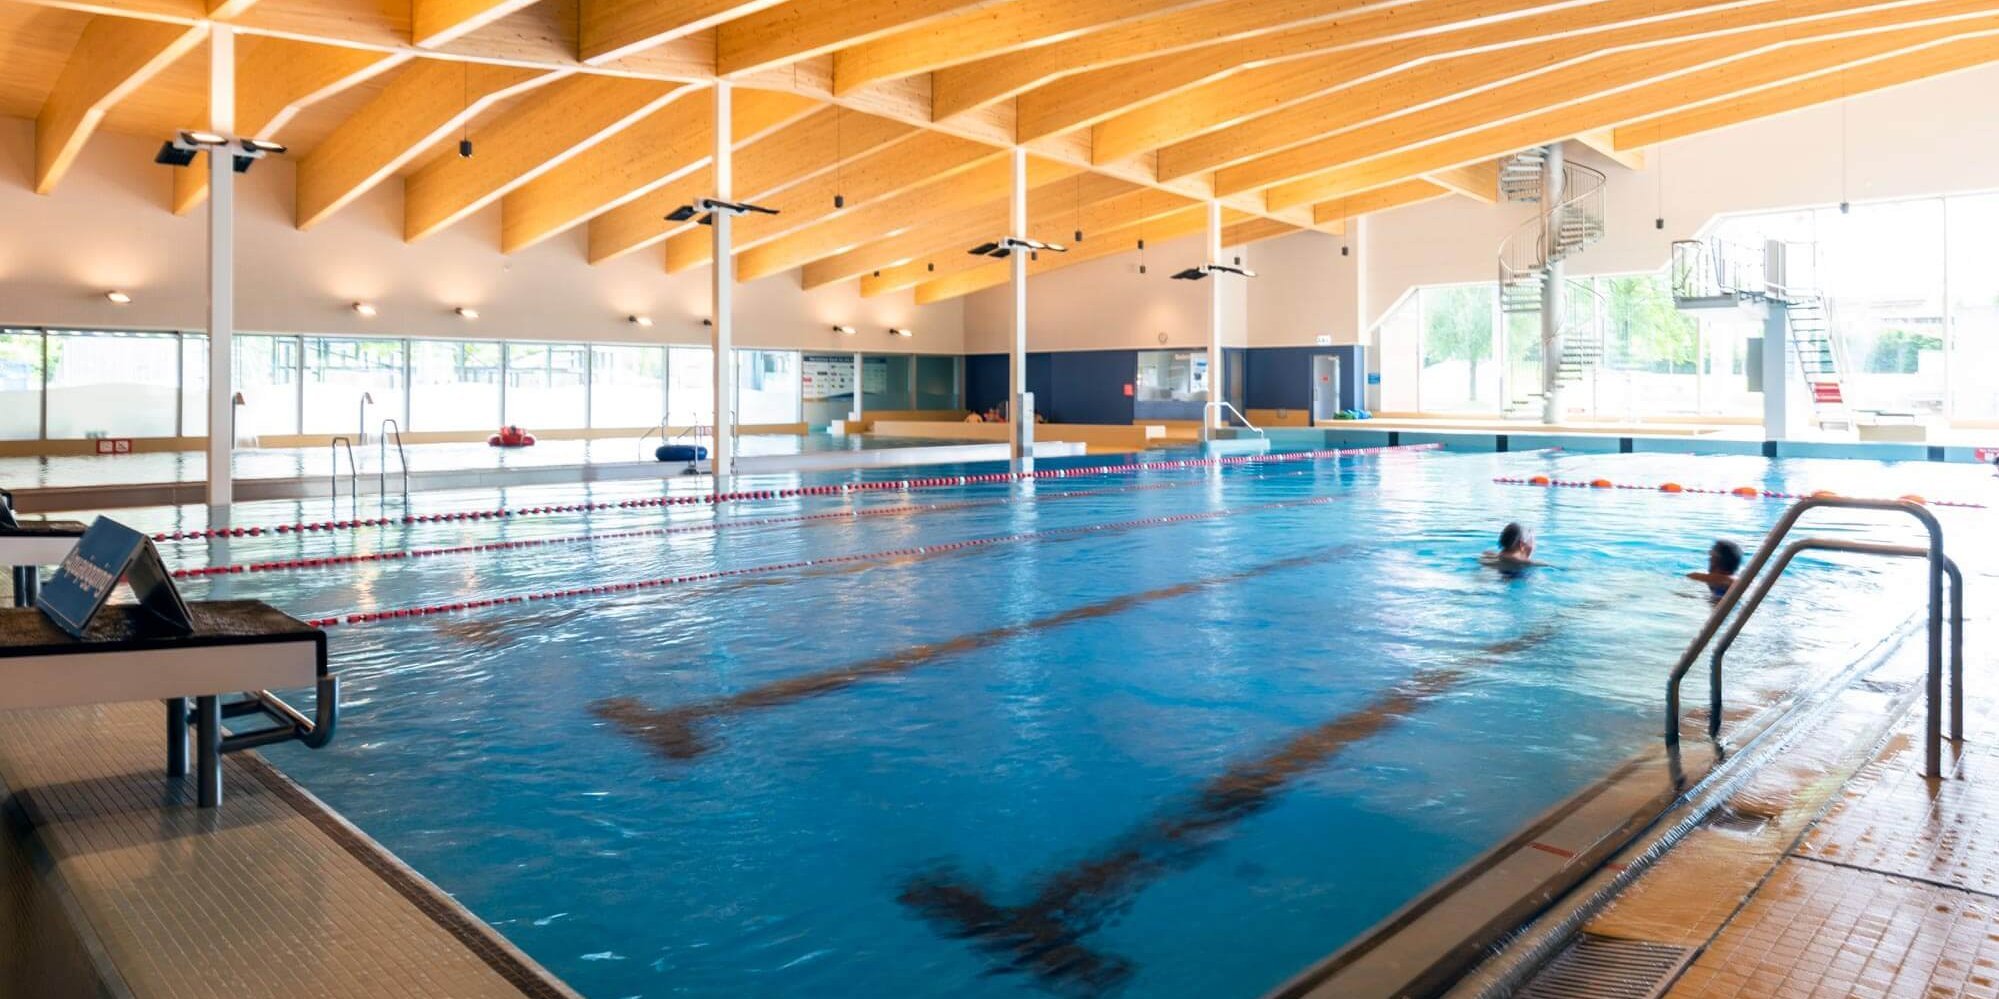 Sportbecken im Hallenbad vom Schwimmbad Altdorf